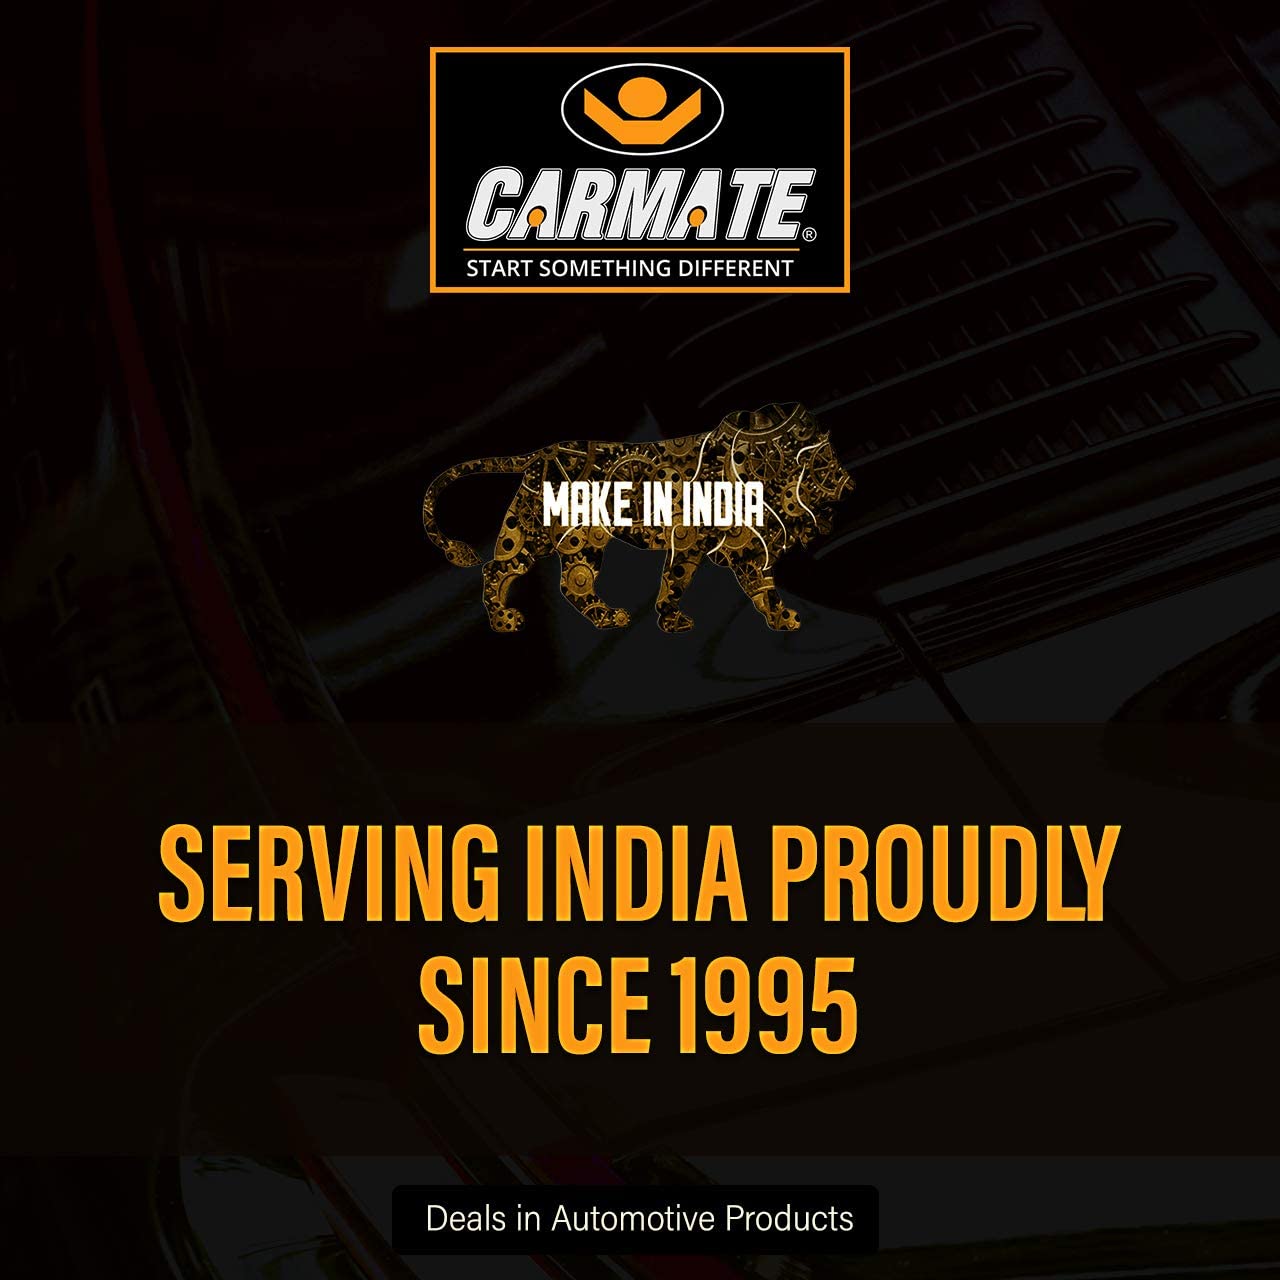 Carmate ECO Car Body Cover (Grey) for Tata - Bolt - CARMATE®